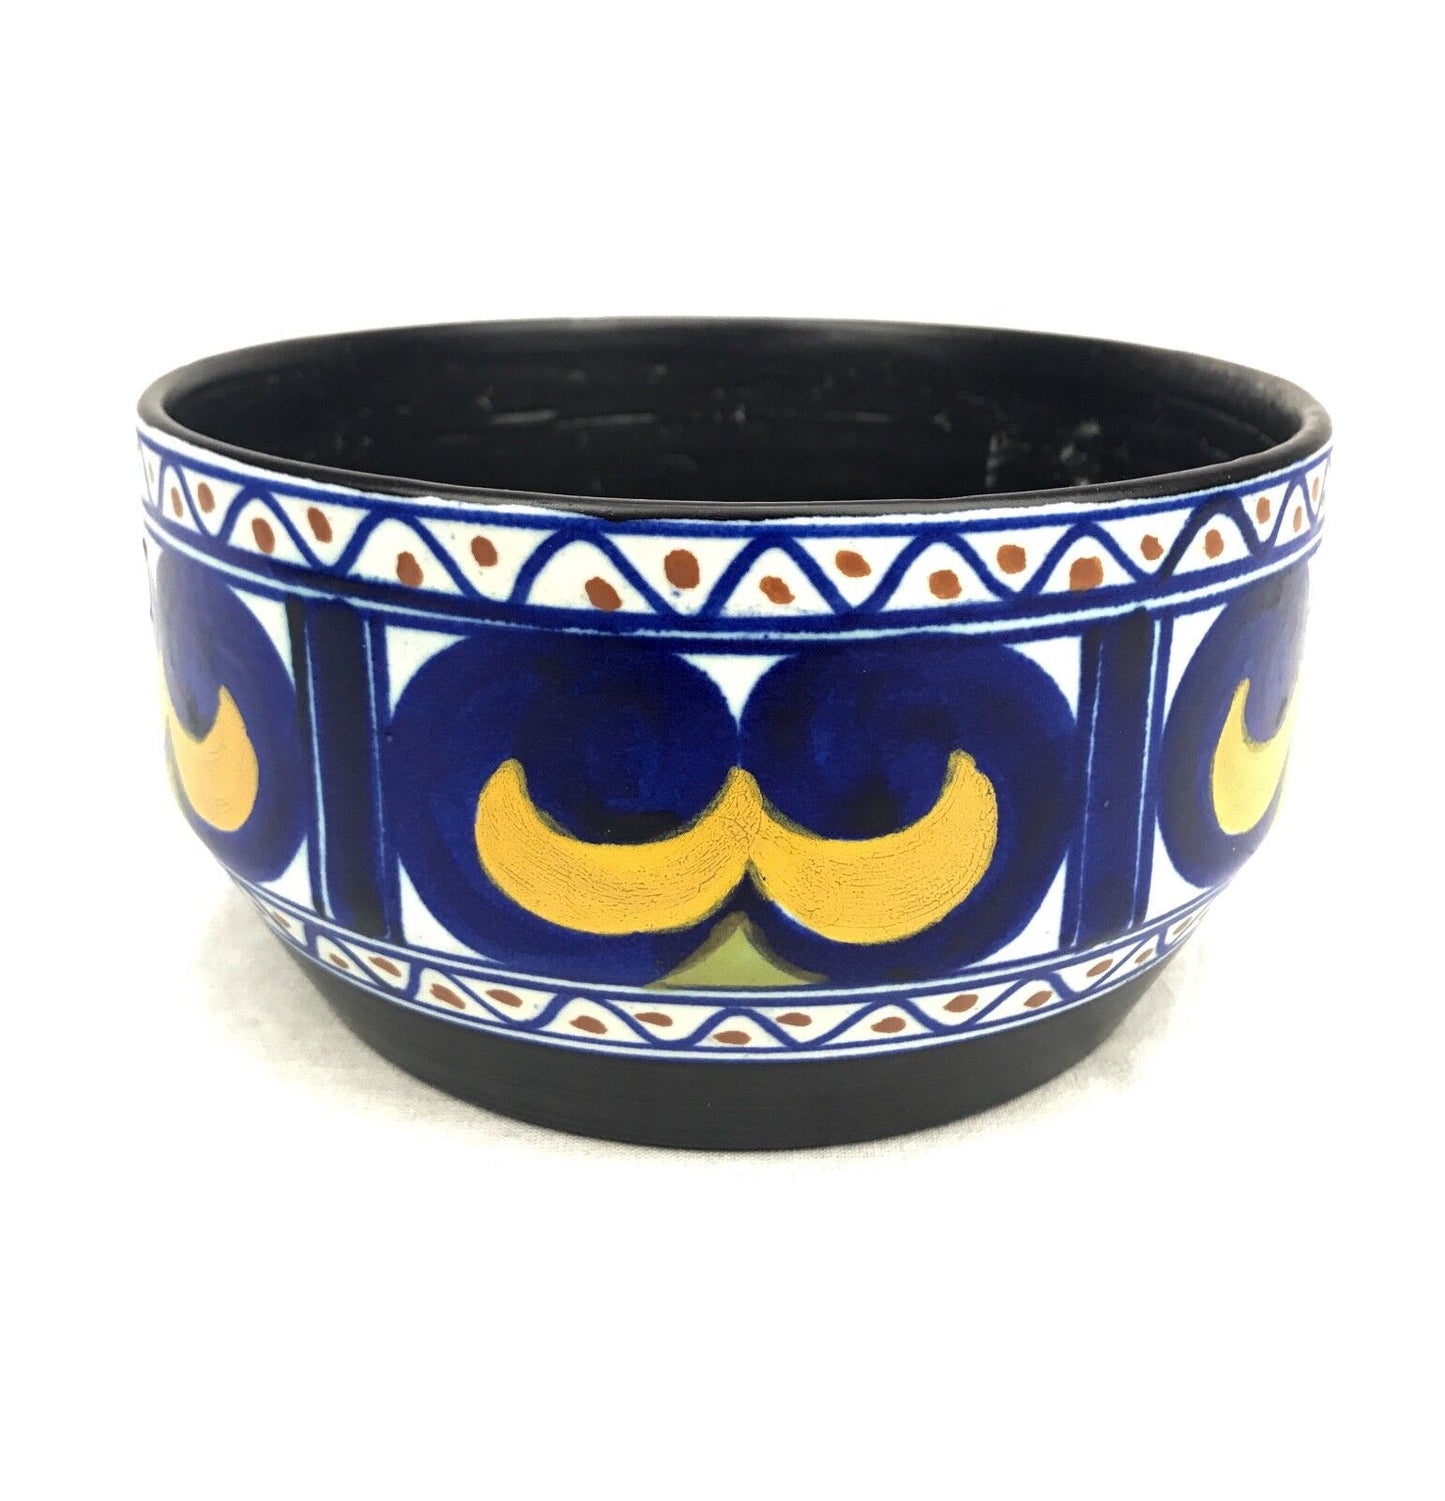 Gouda Pottery Bowl / Vase / Centre Piece / Art Deco 1920's / Blue / Yellow